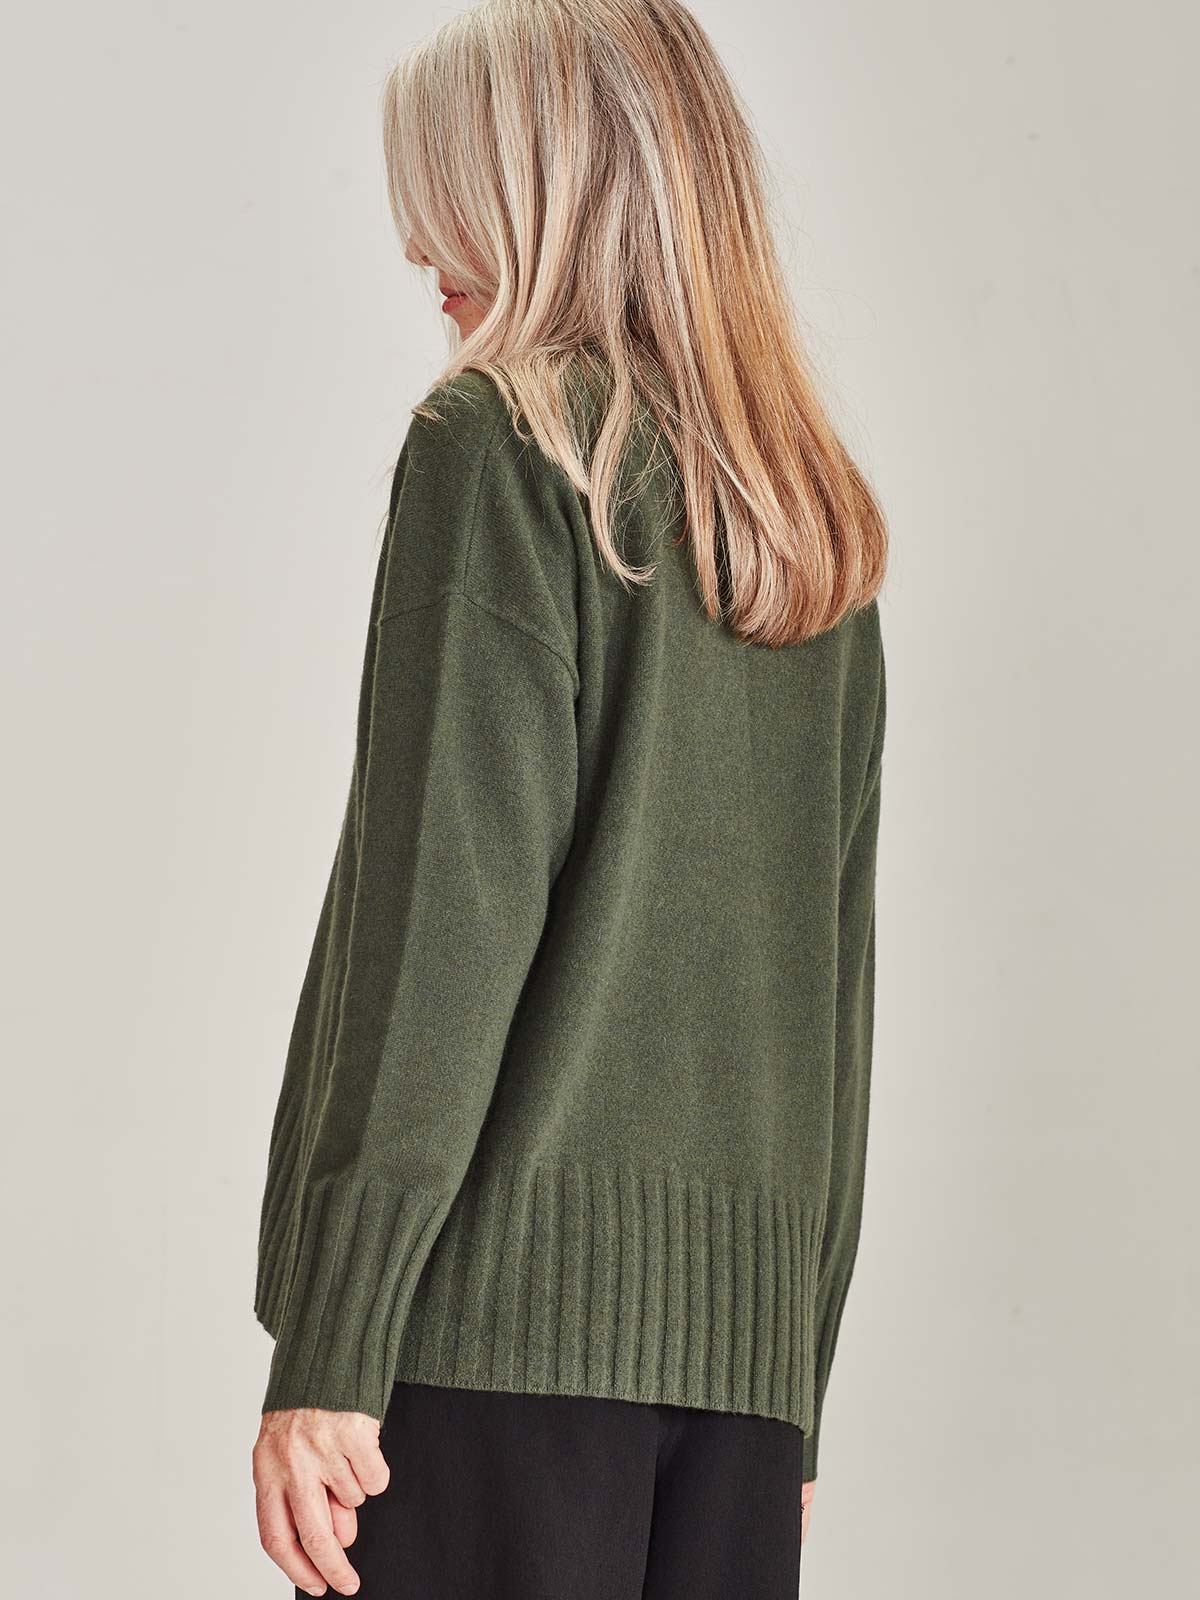 Cosette Cashmere Sweater